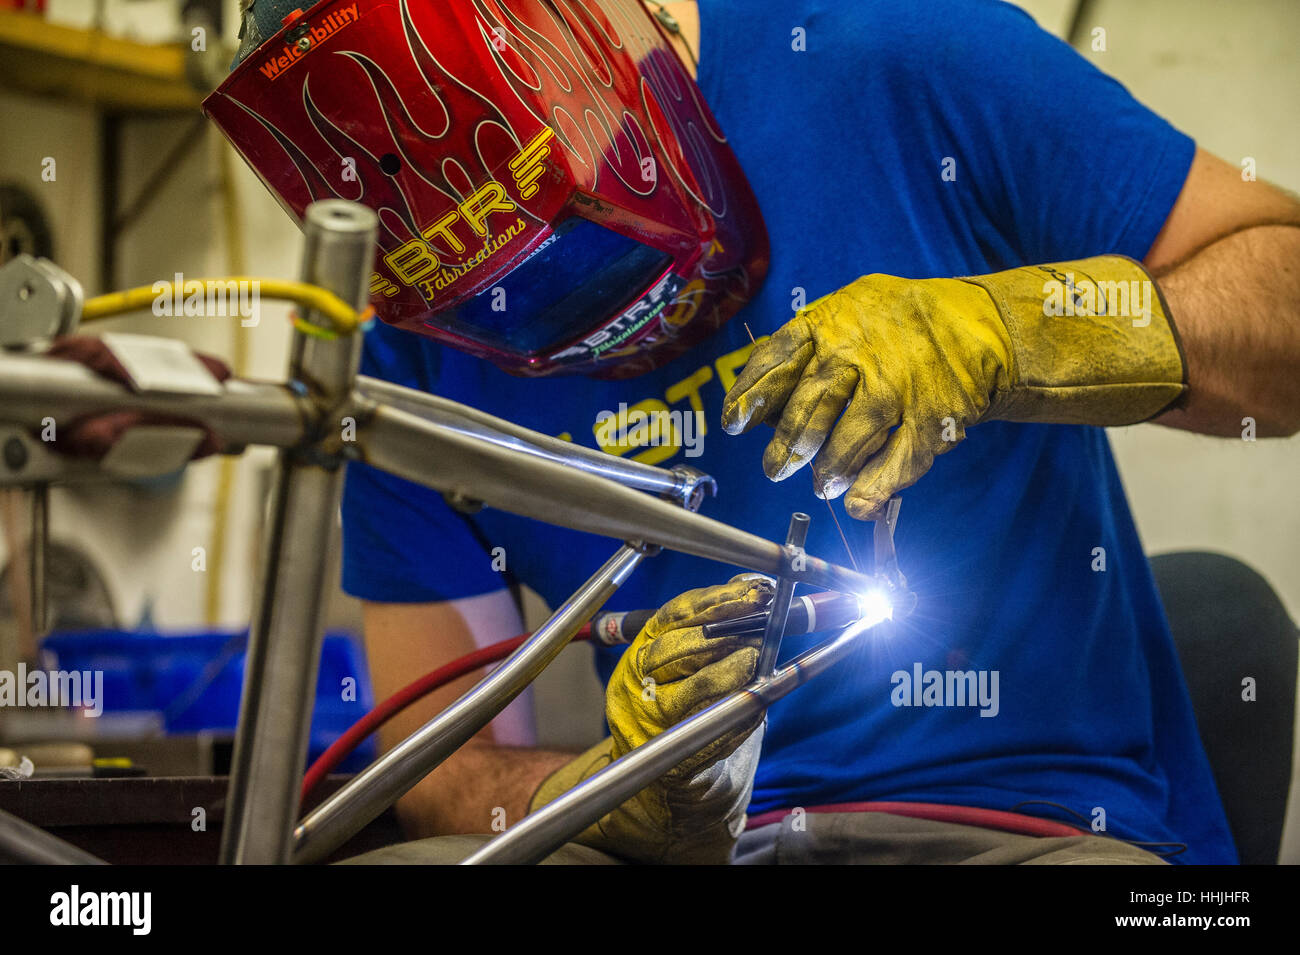 A bespoke steel mountain bike frame is TIG welded in a workshop. Stock Photo